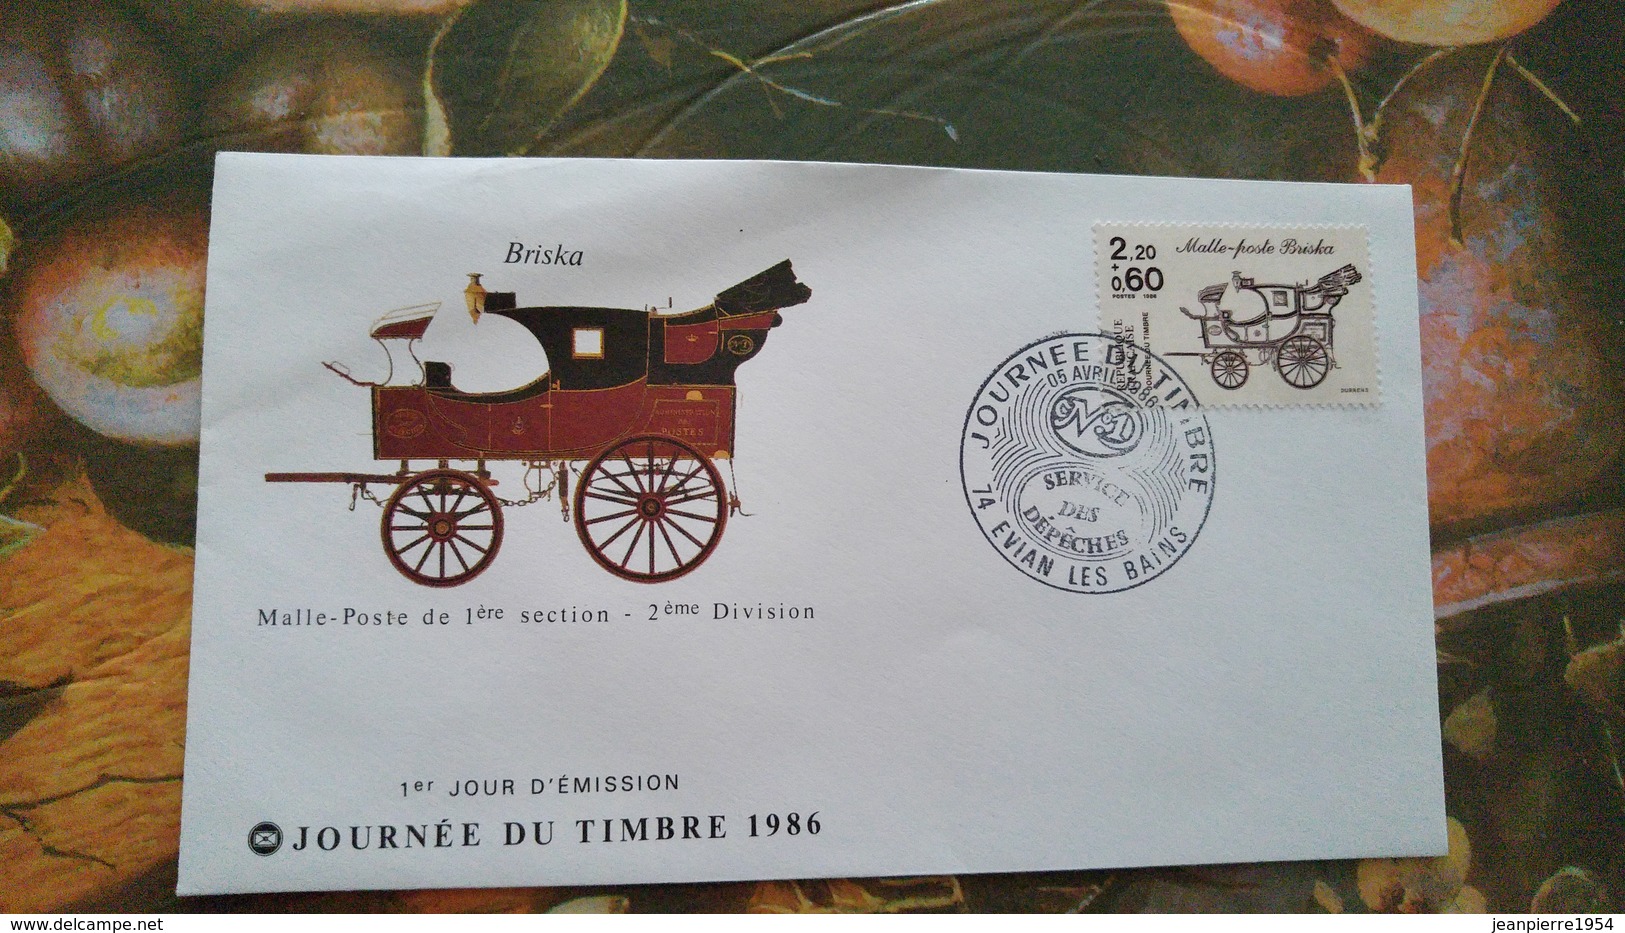 timbres francais